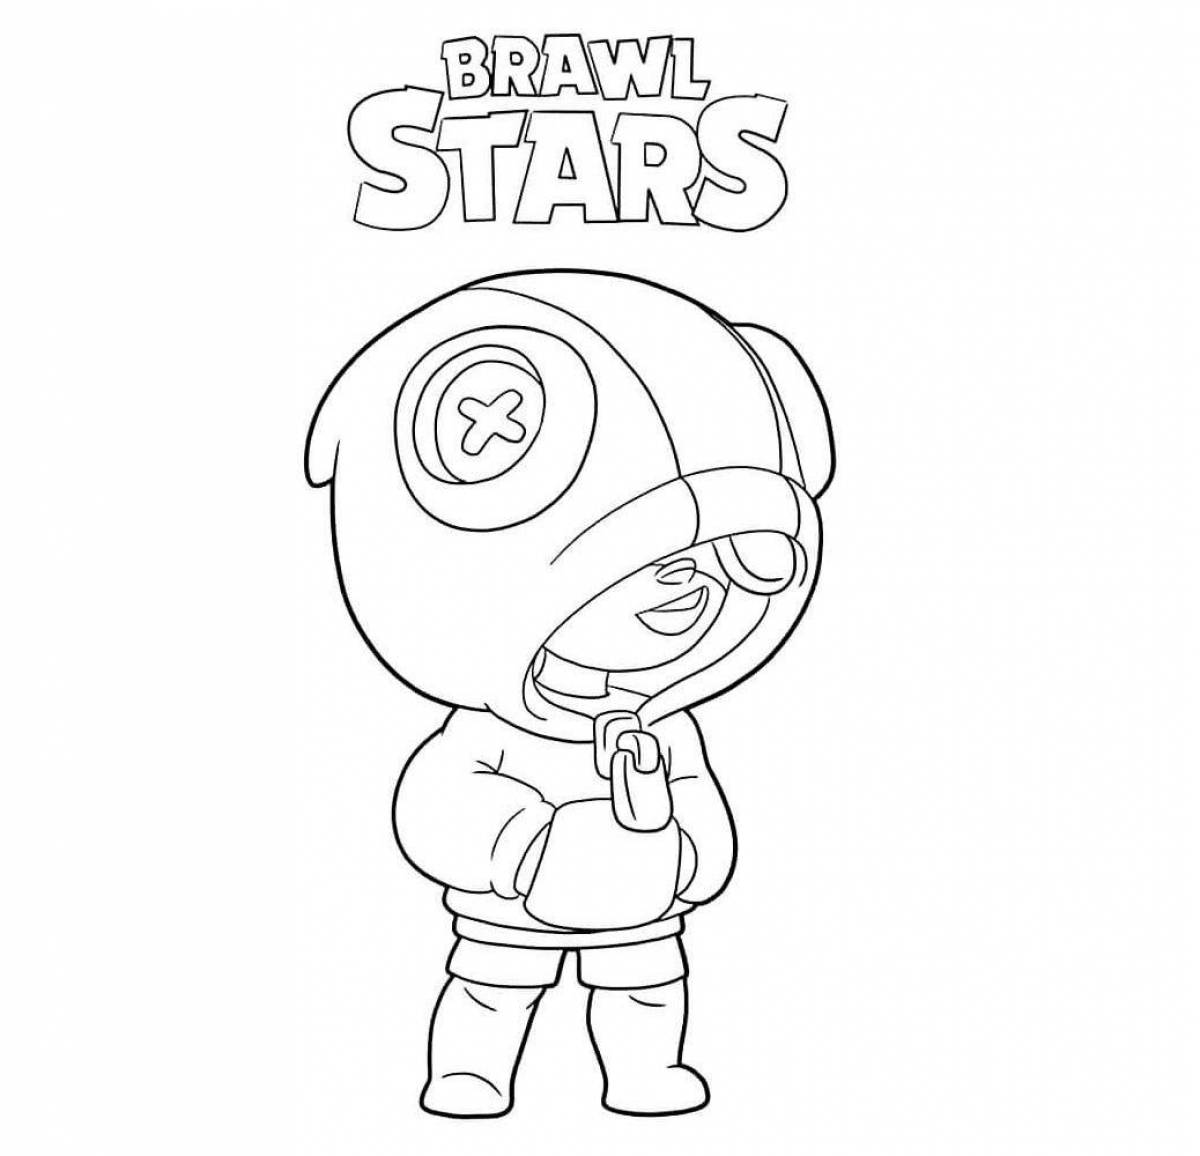 Fun coloring brawl stars game